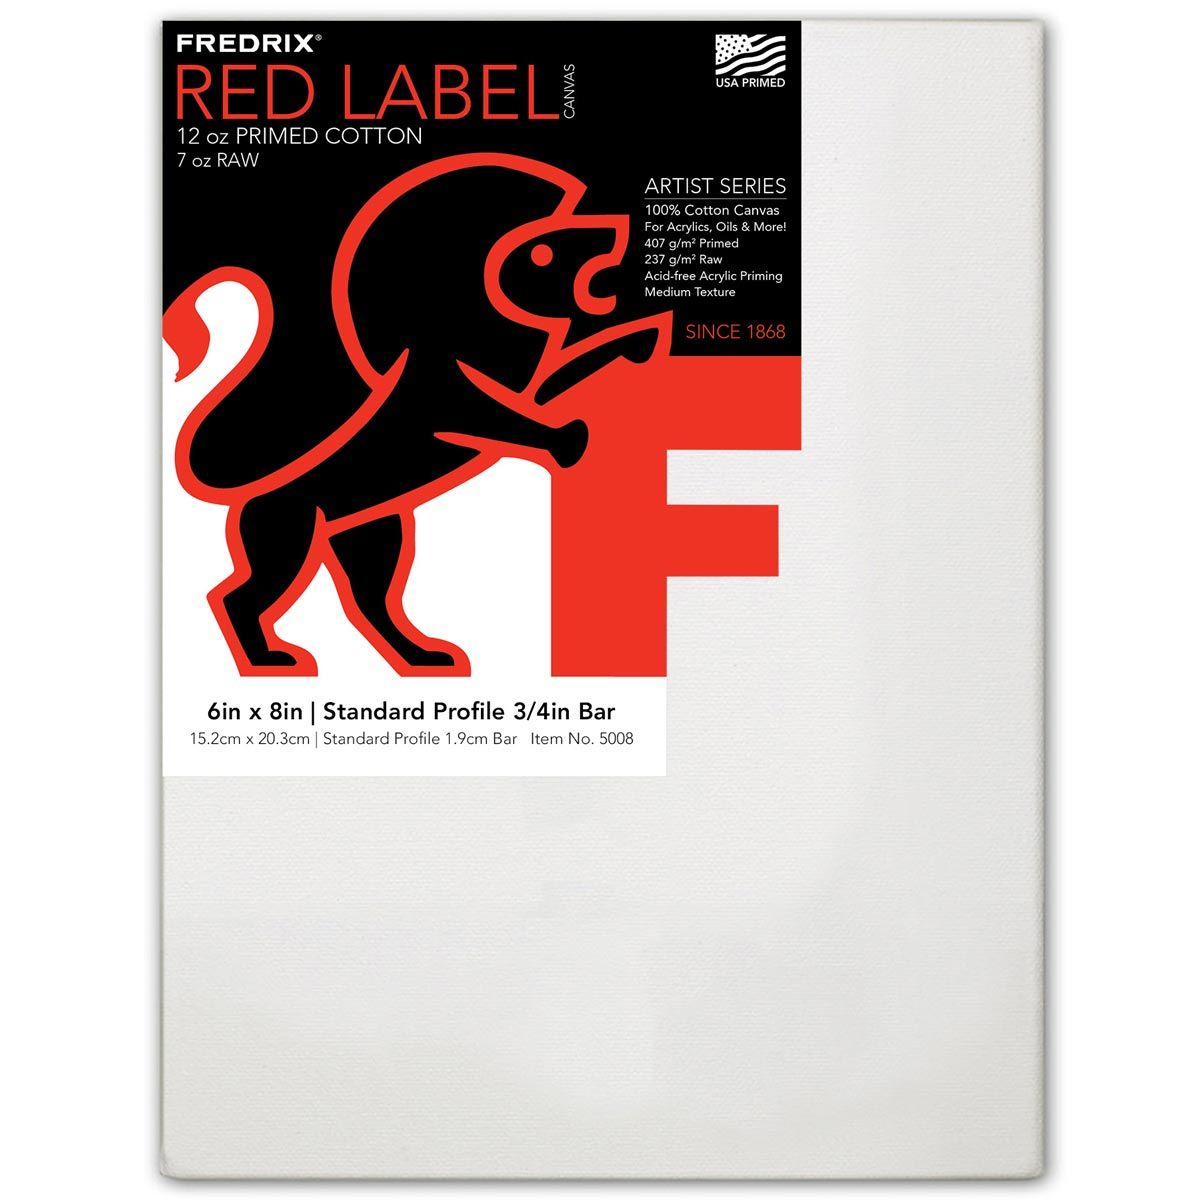 Fredrix Red Label 3/4" Profile Cotton Canvas 6" x 8"